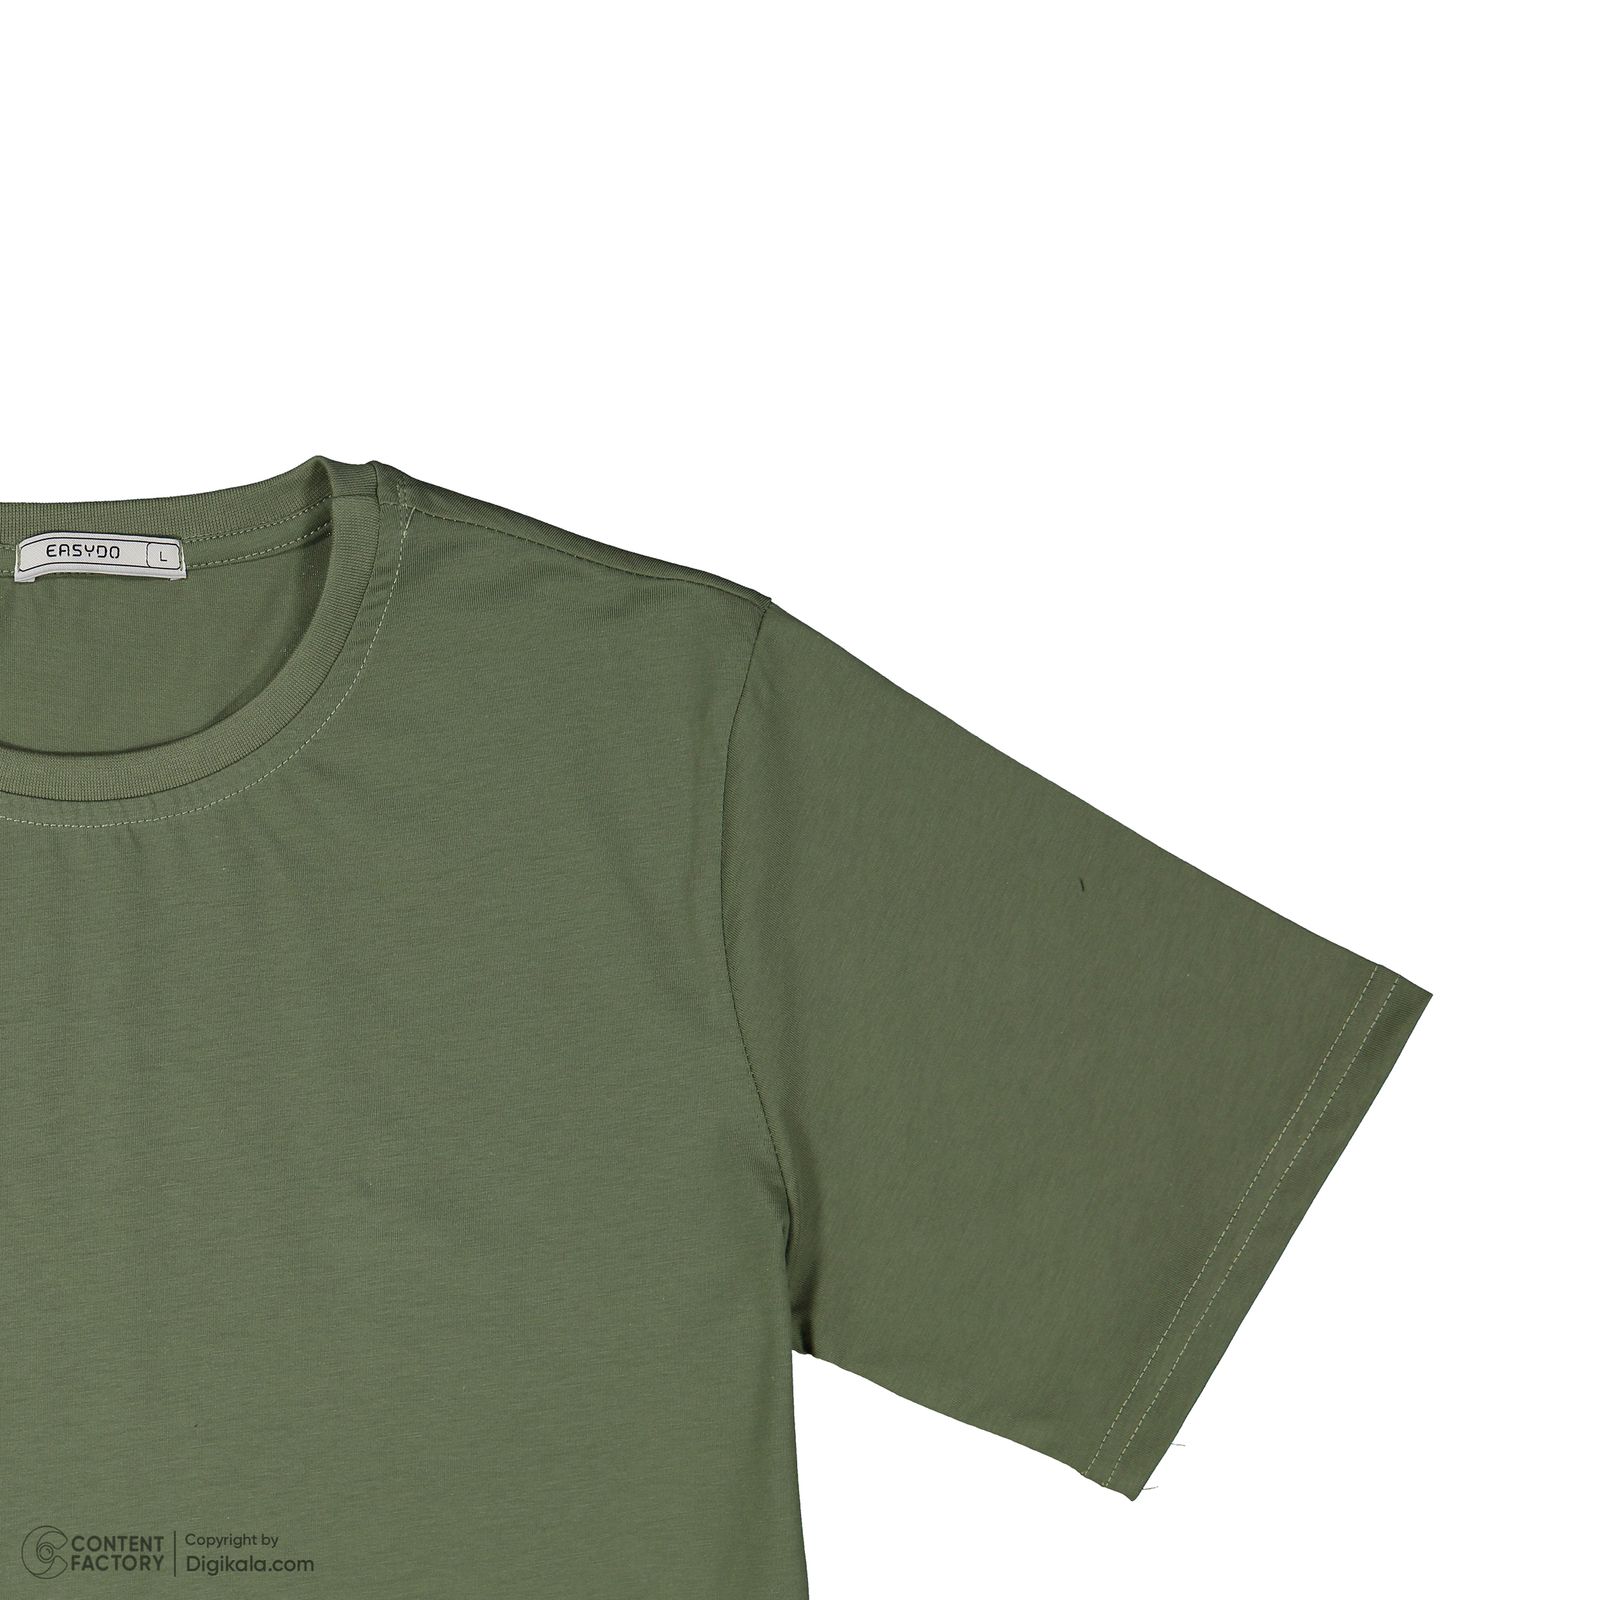 تی شرت آستین کوتاه مردانه ایزی دو مدل 2181299-43 -  - 7